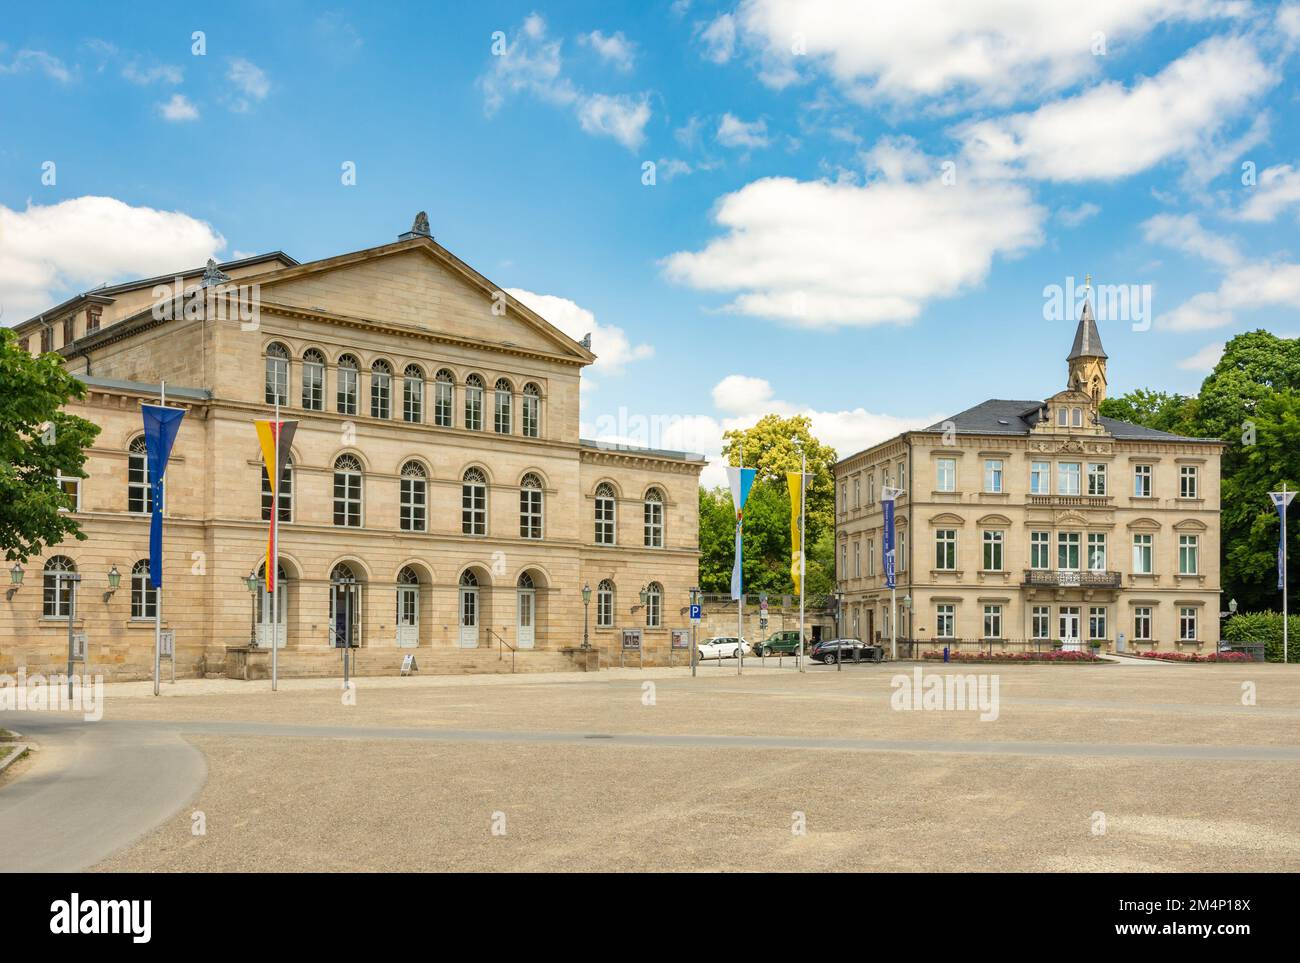 COBURG, Deutschland - Juni 20: Die neoklassische Theater (Landestheater) von Coburg, Deutschland am 20. Juni 2018. Stockfoto